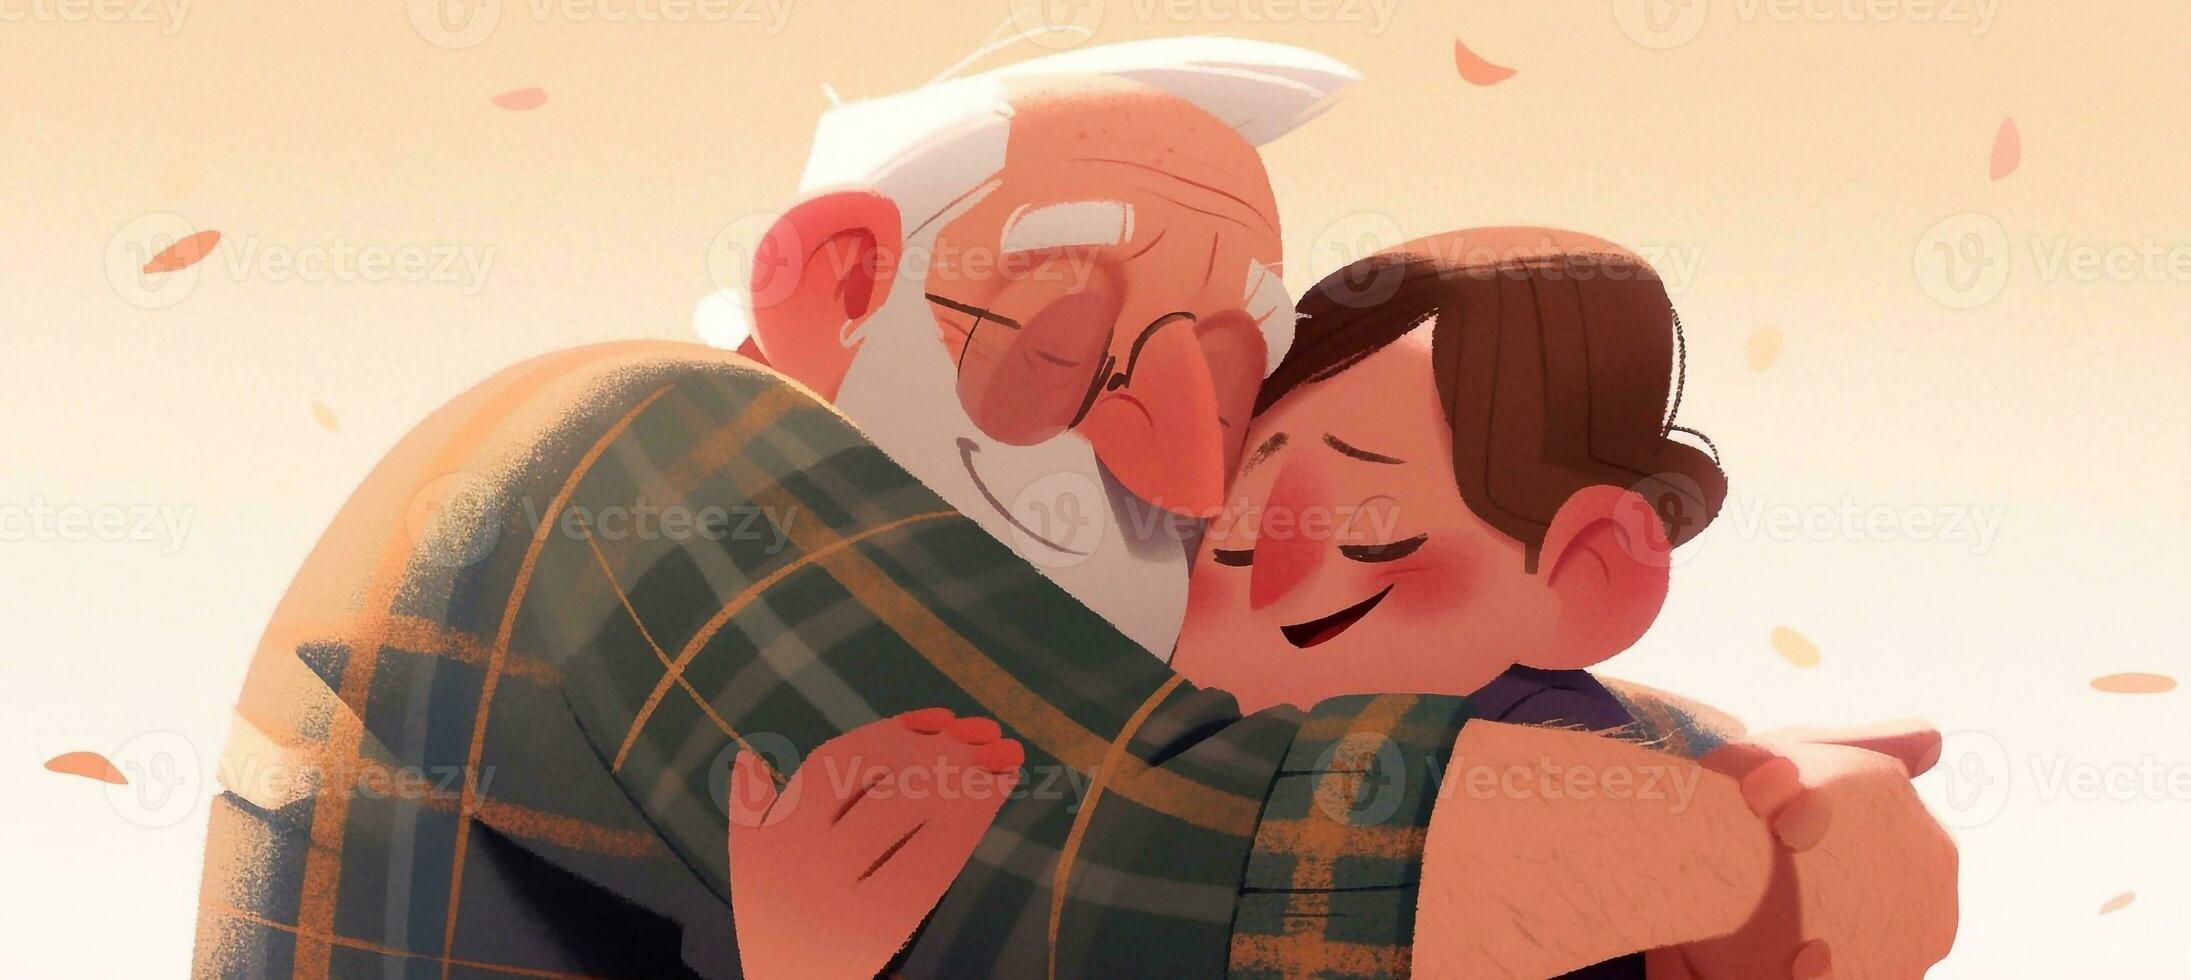 ilustração do uma pai abraços dele filho dentro uma caloroso e sincero abraço dentro desenho animado estilo foto